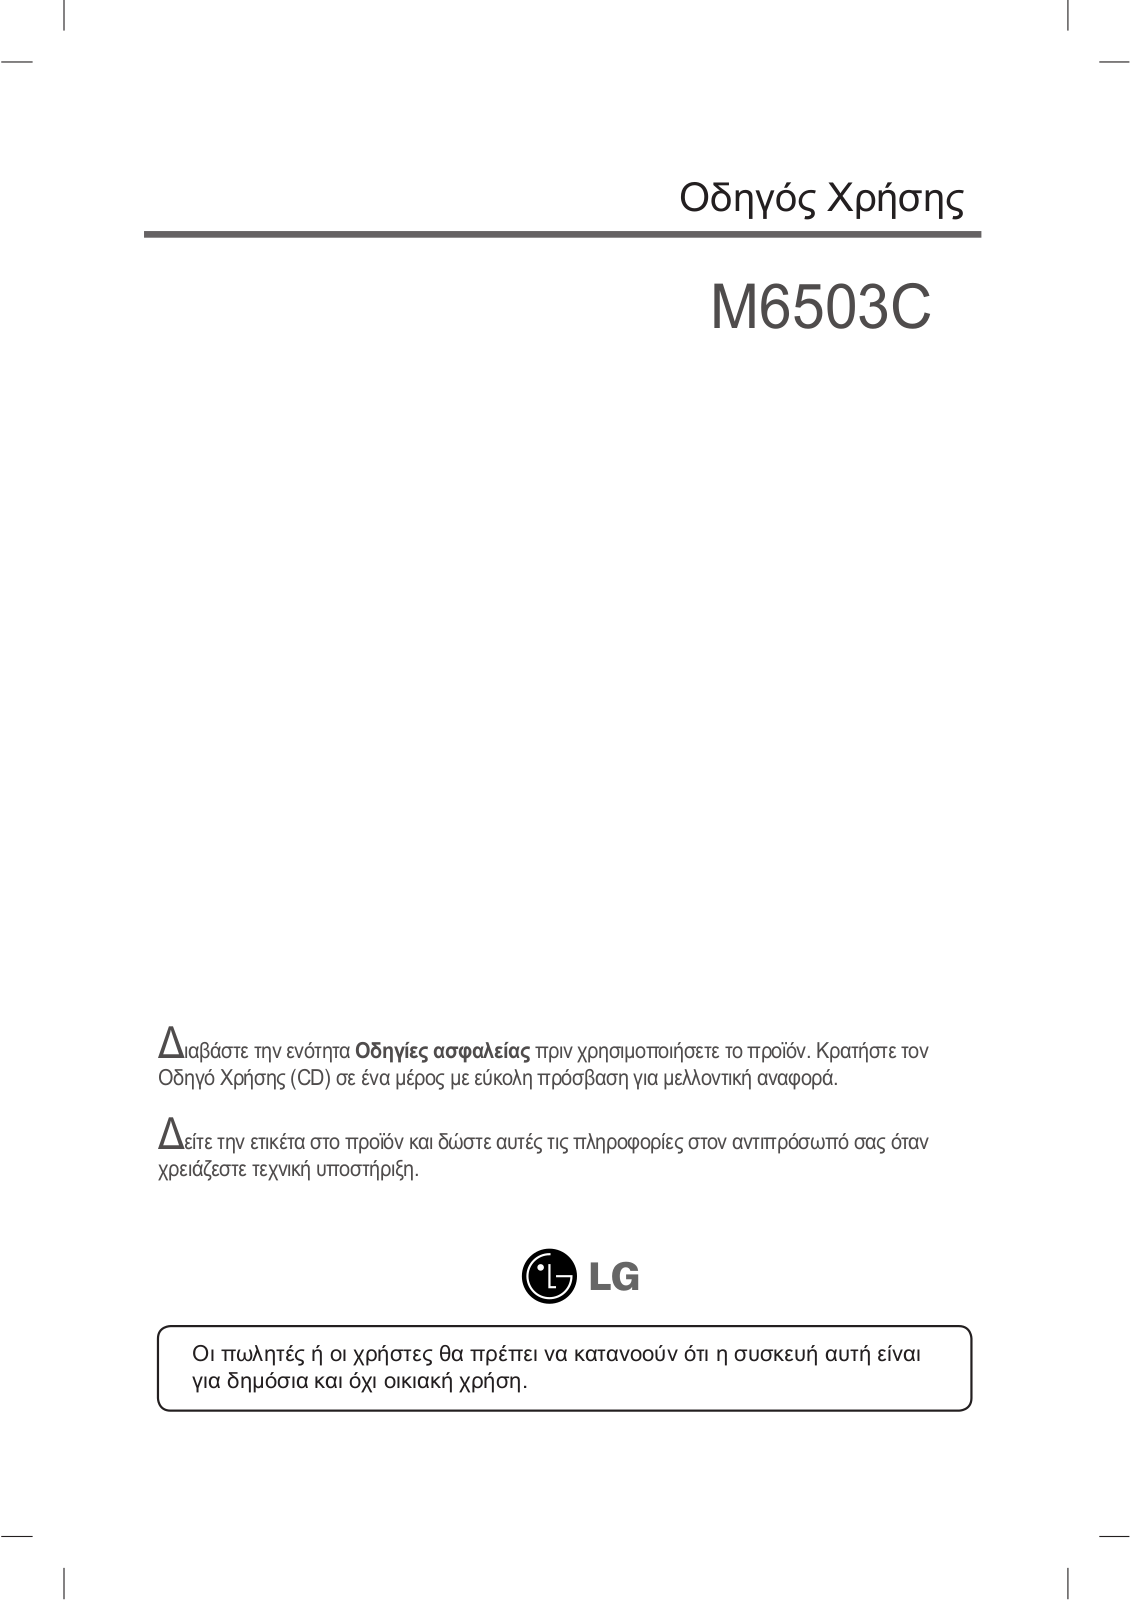 Lg M6503C User Manual